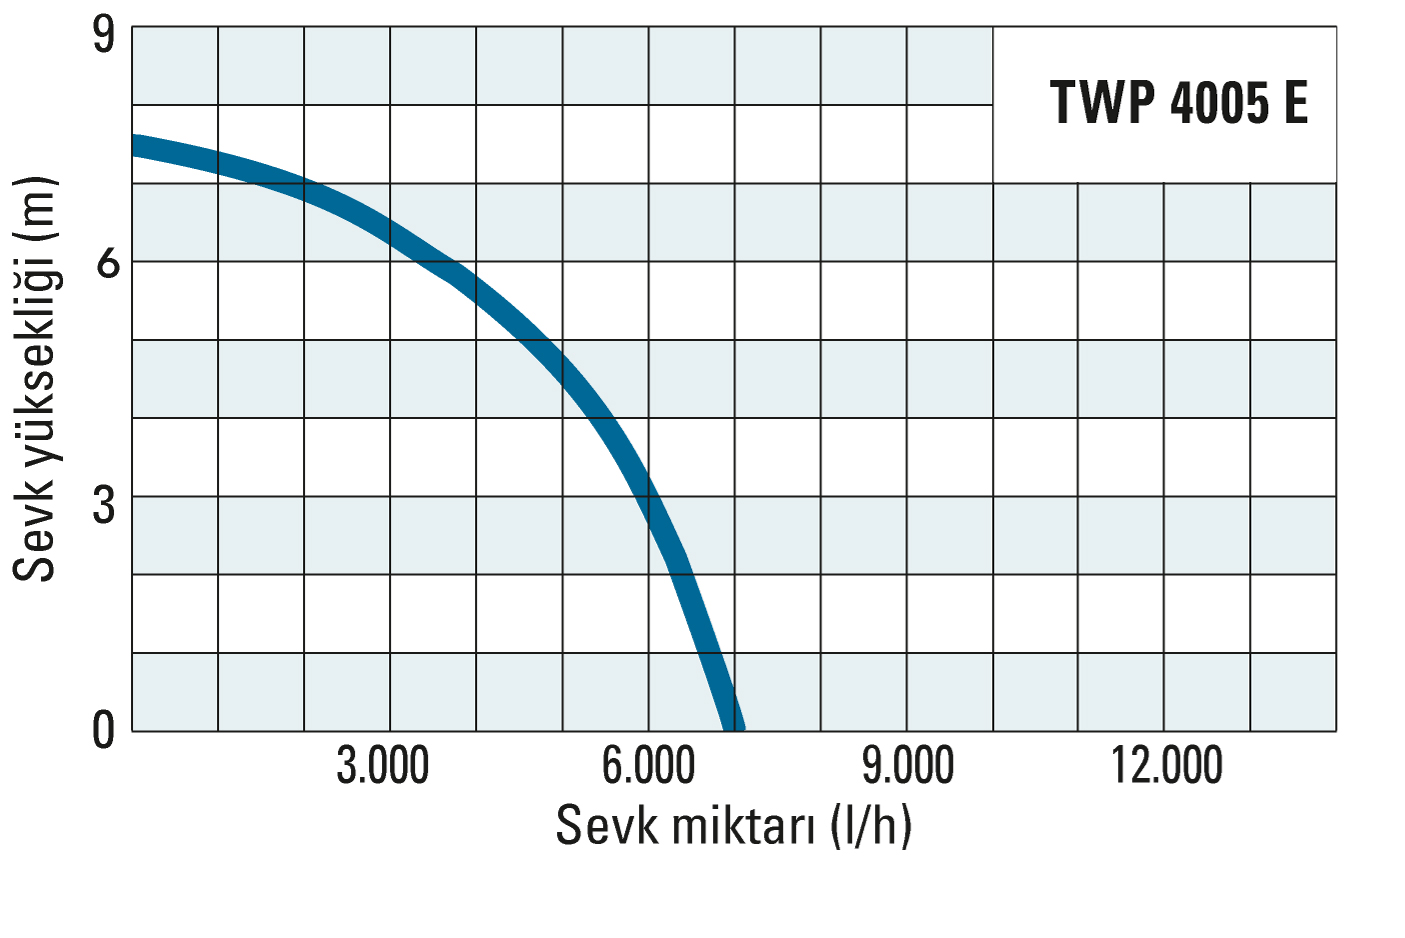 TWP 4005 E’nin sevk yüksekliği ve sevk miktarı